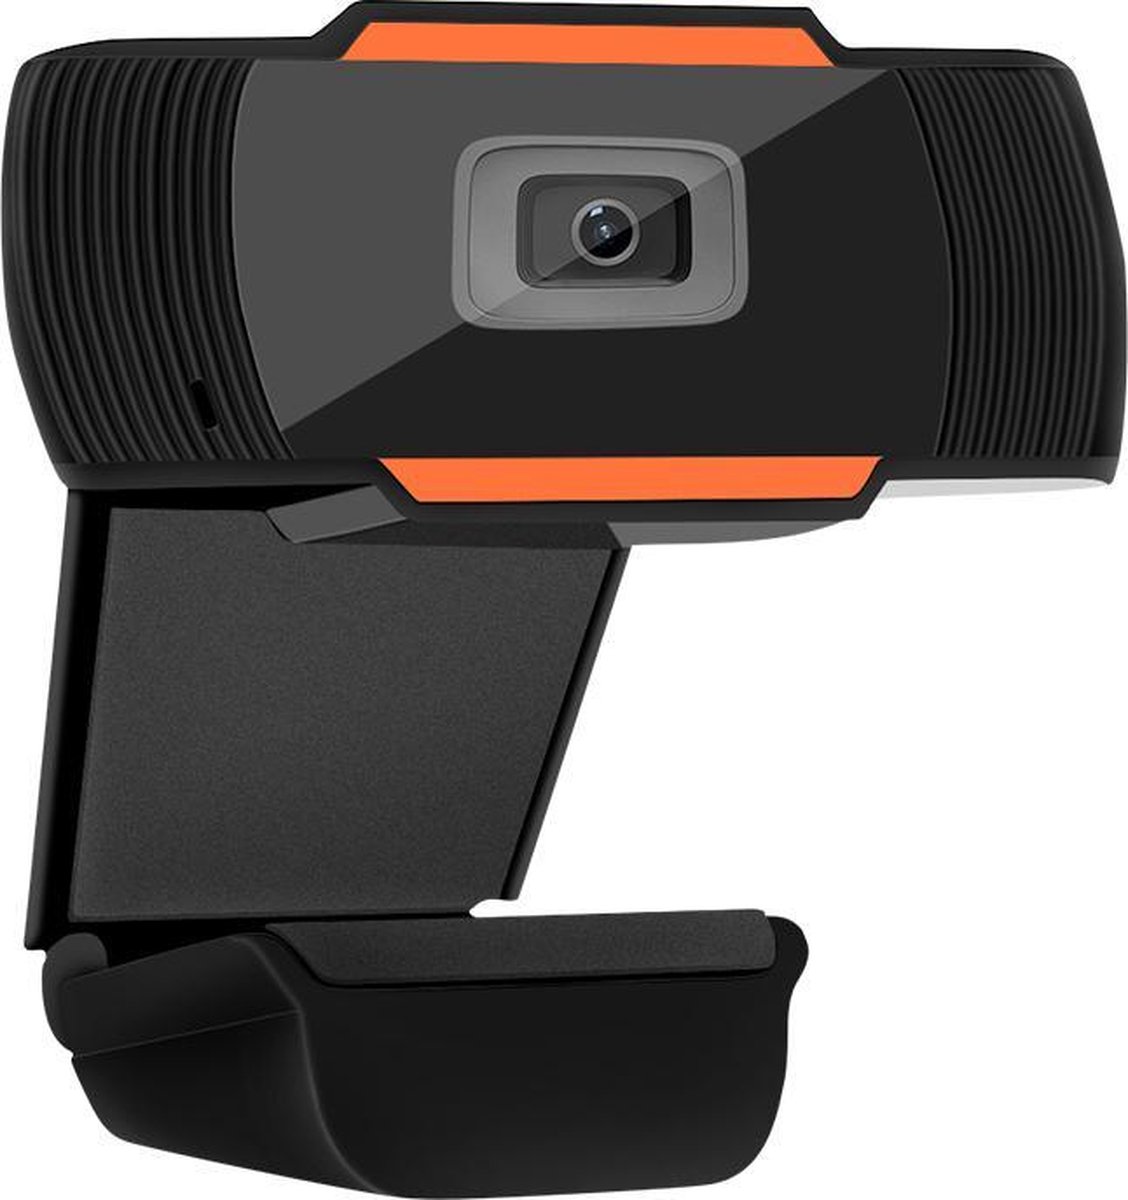 Webcam 720p voor pc - 3 megapixels - Met microfoon - Met USB-aansluiting